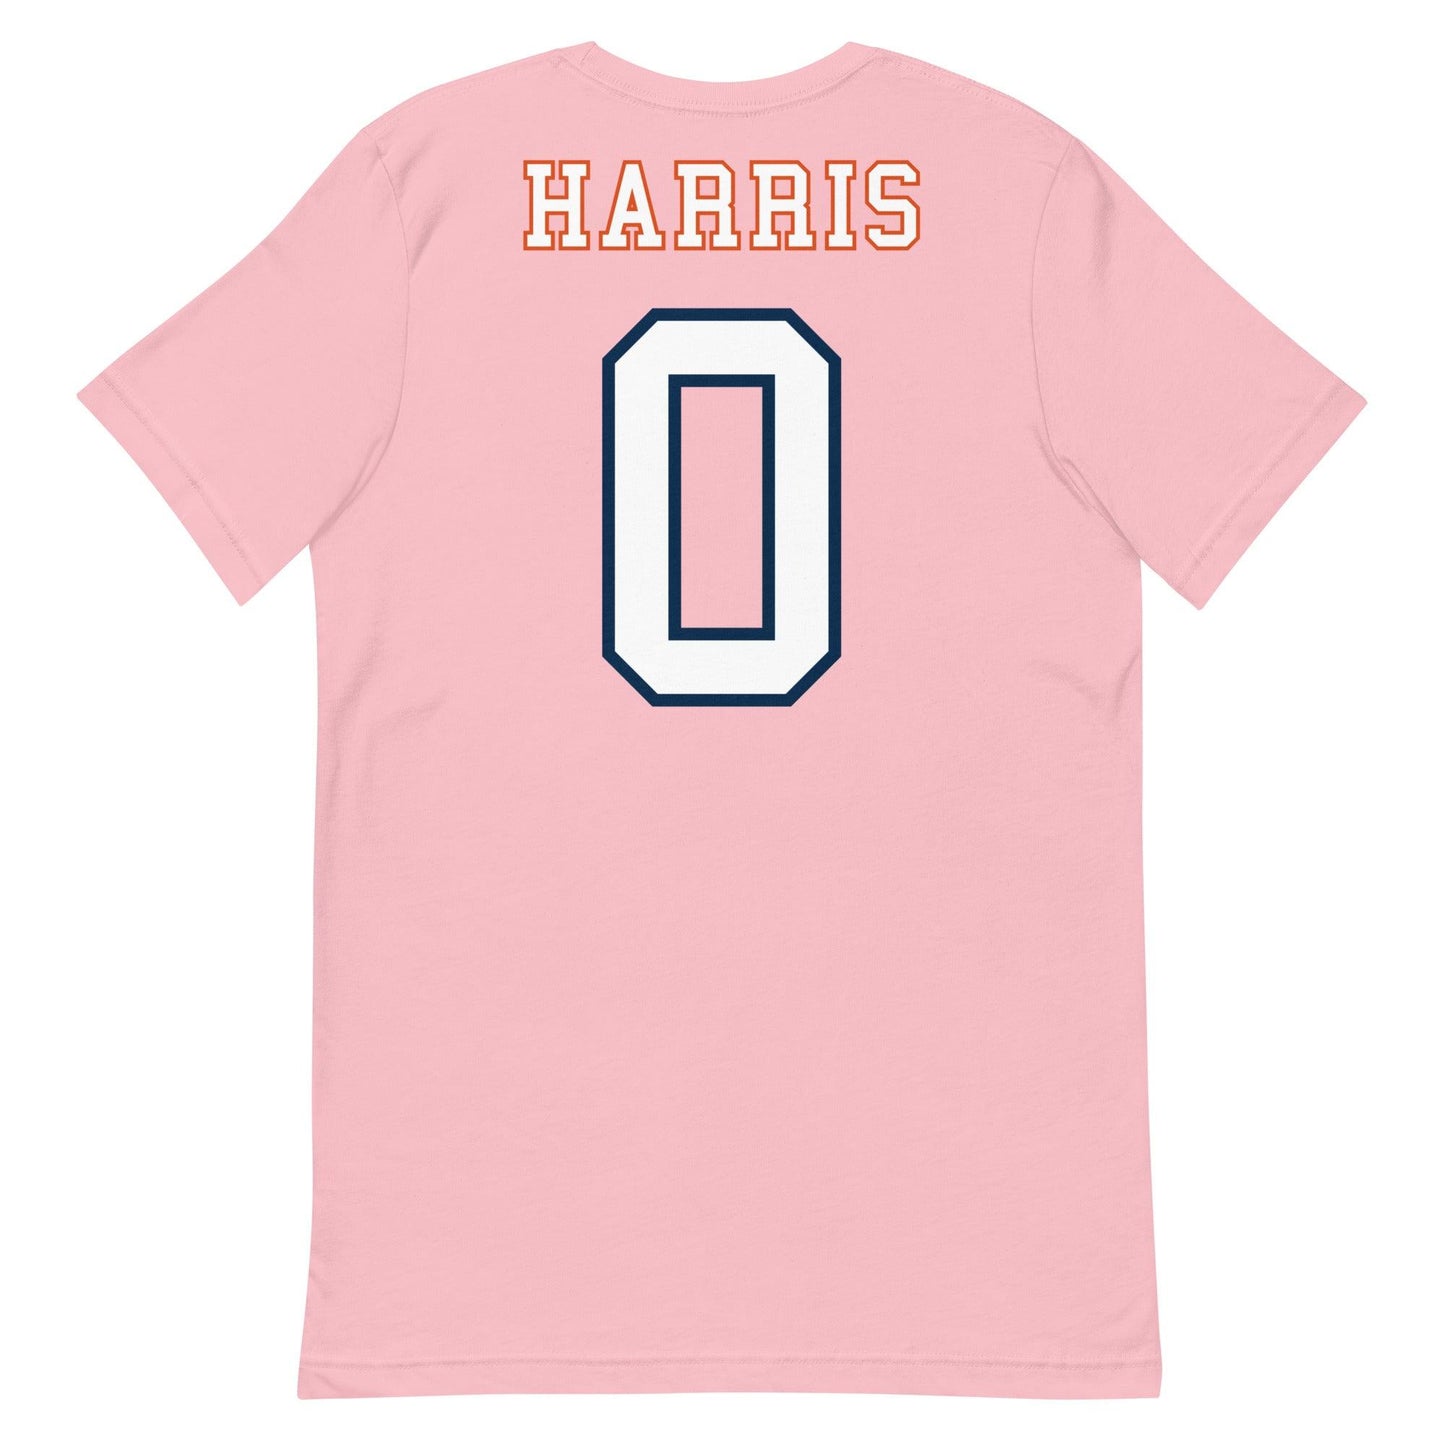 Frank Harris "Jersey" t-shirt - Fan Arch